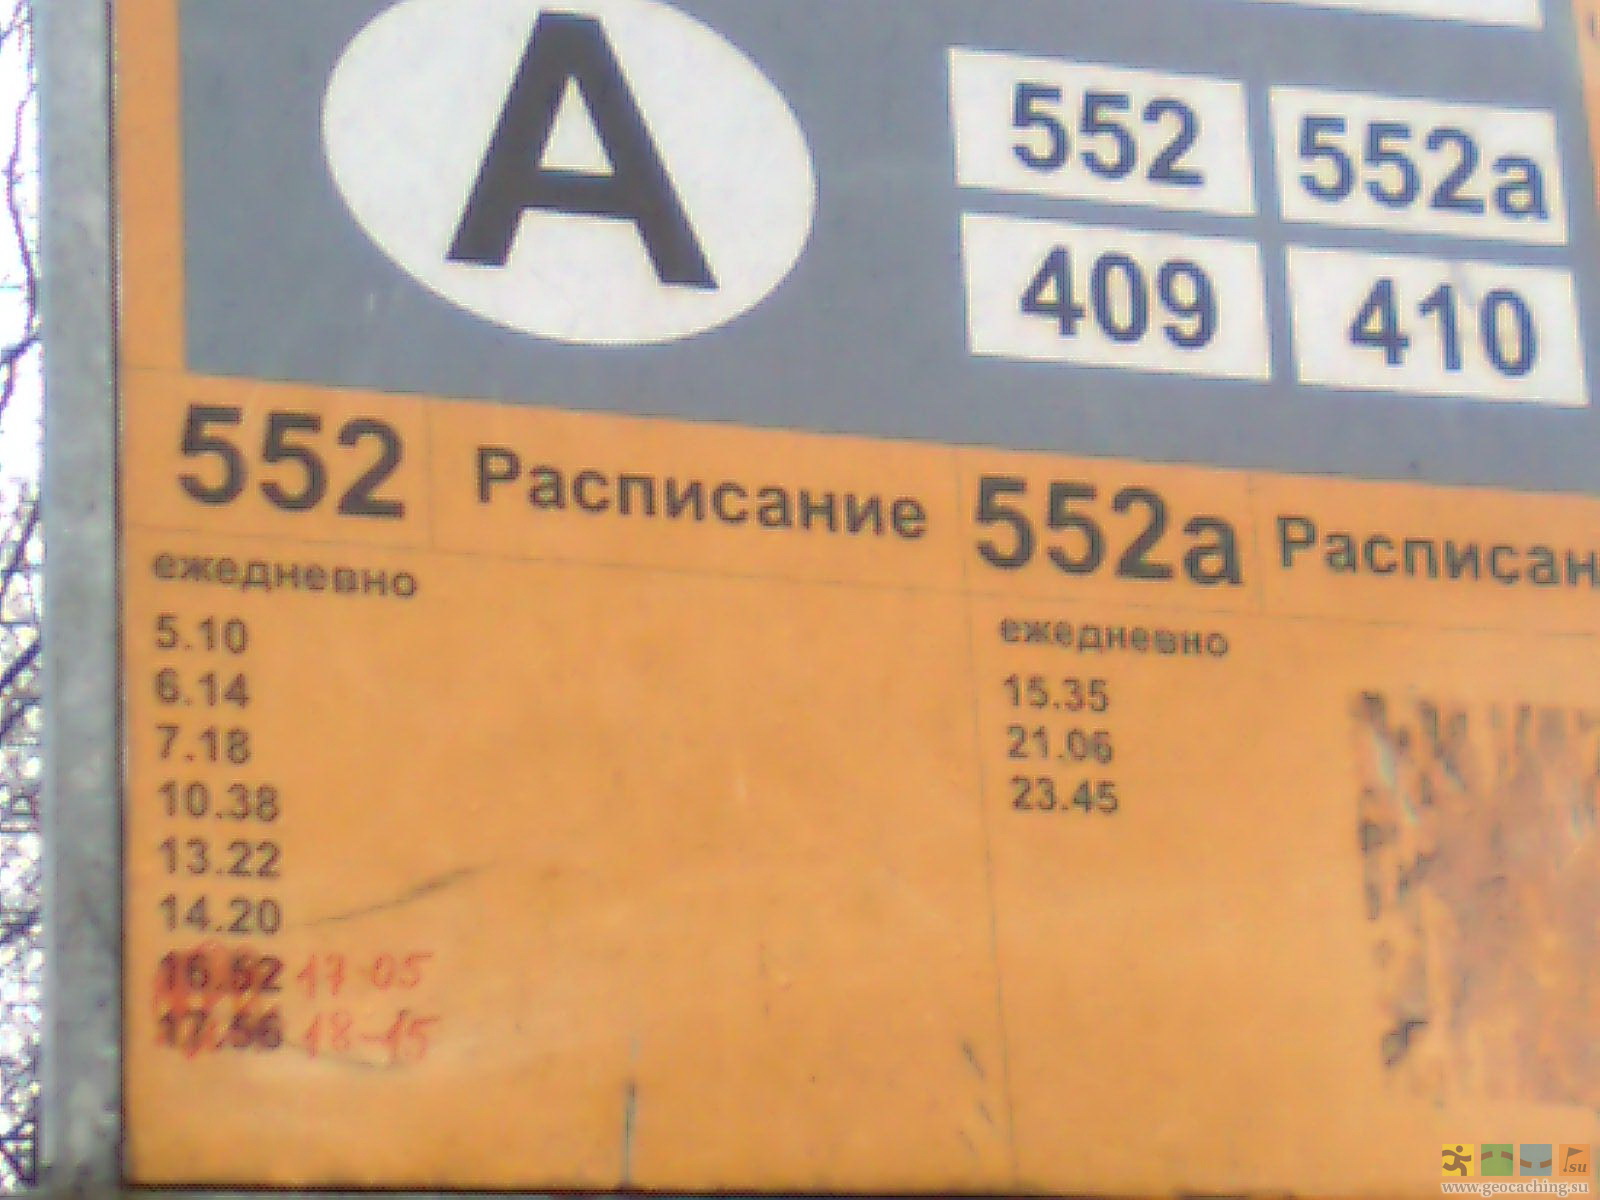 Расписание автобусов 213 от 21 км